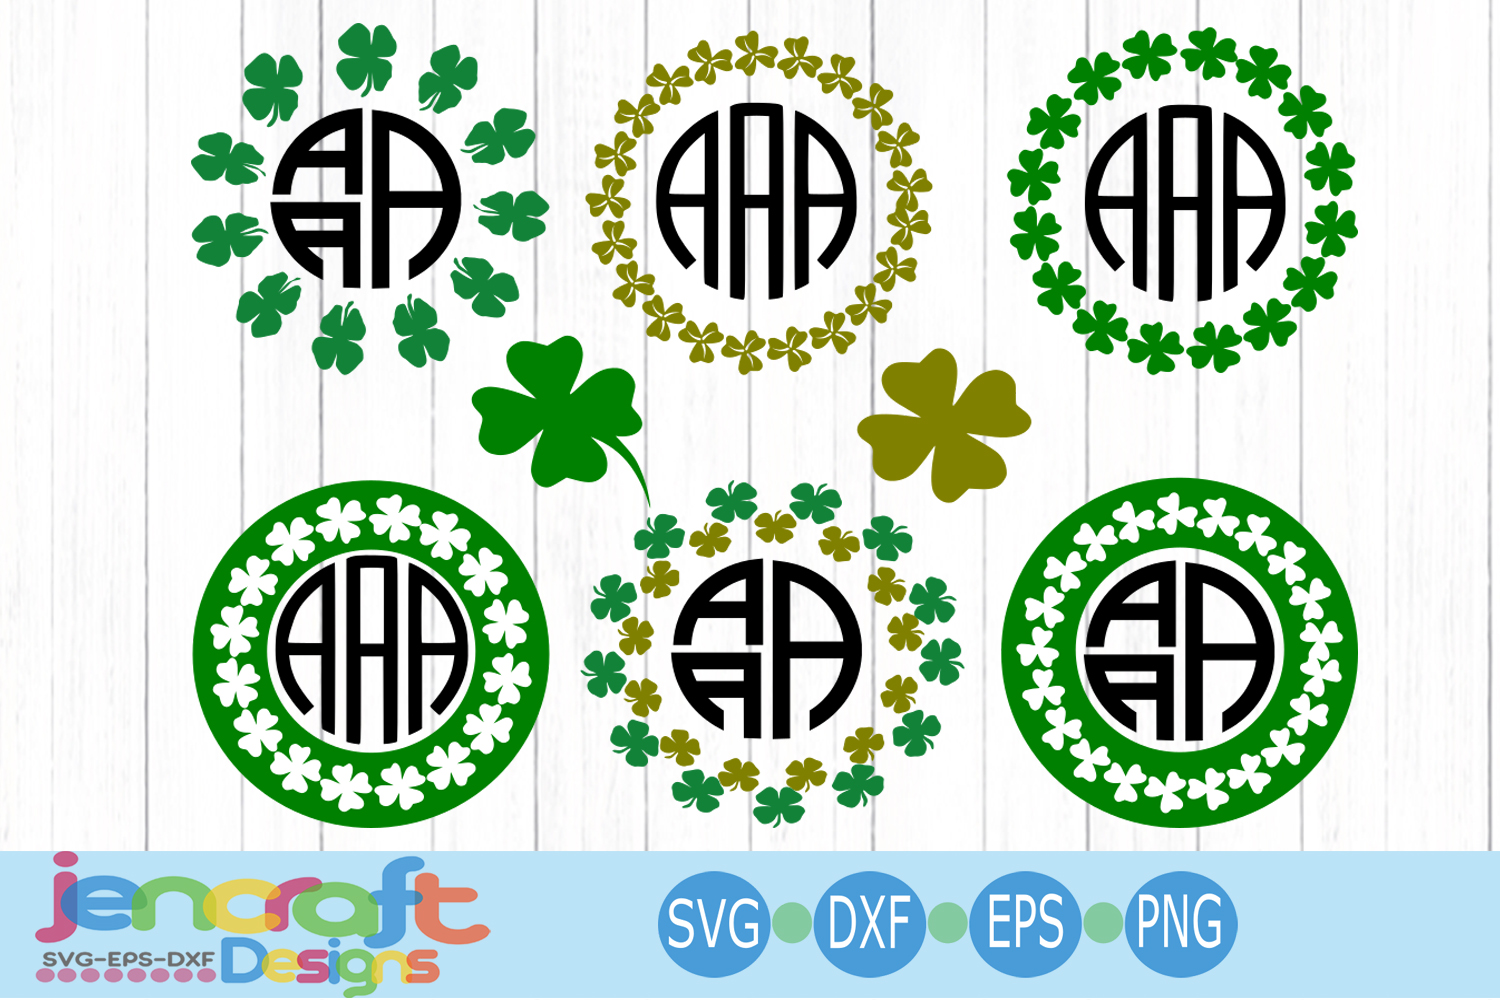 Download St. Patrick's day SVG, Clover Shamrock SVG Monogram Frame